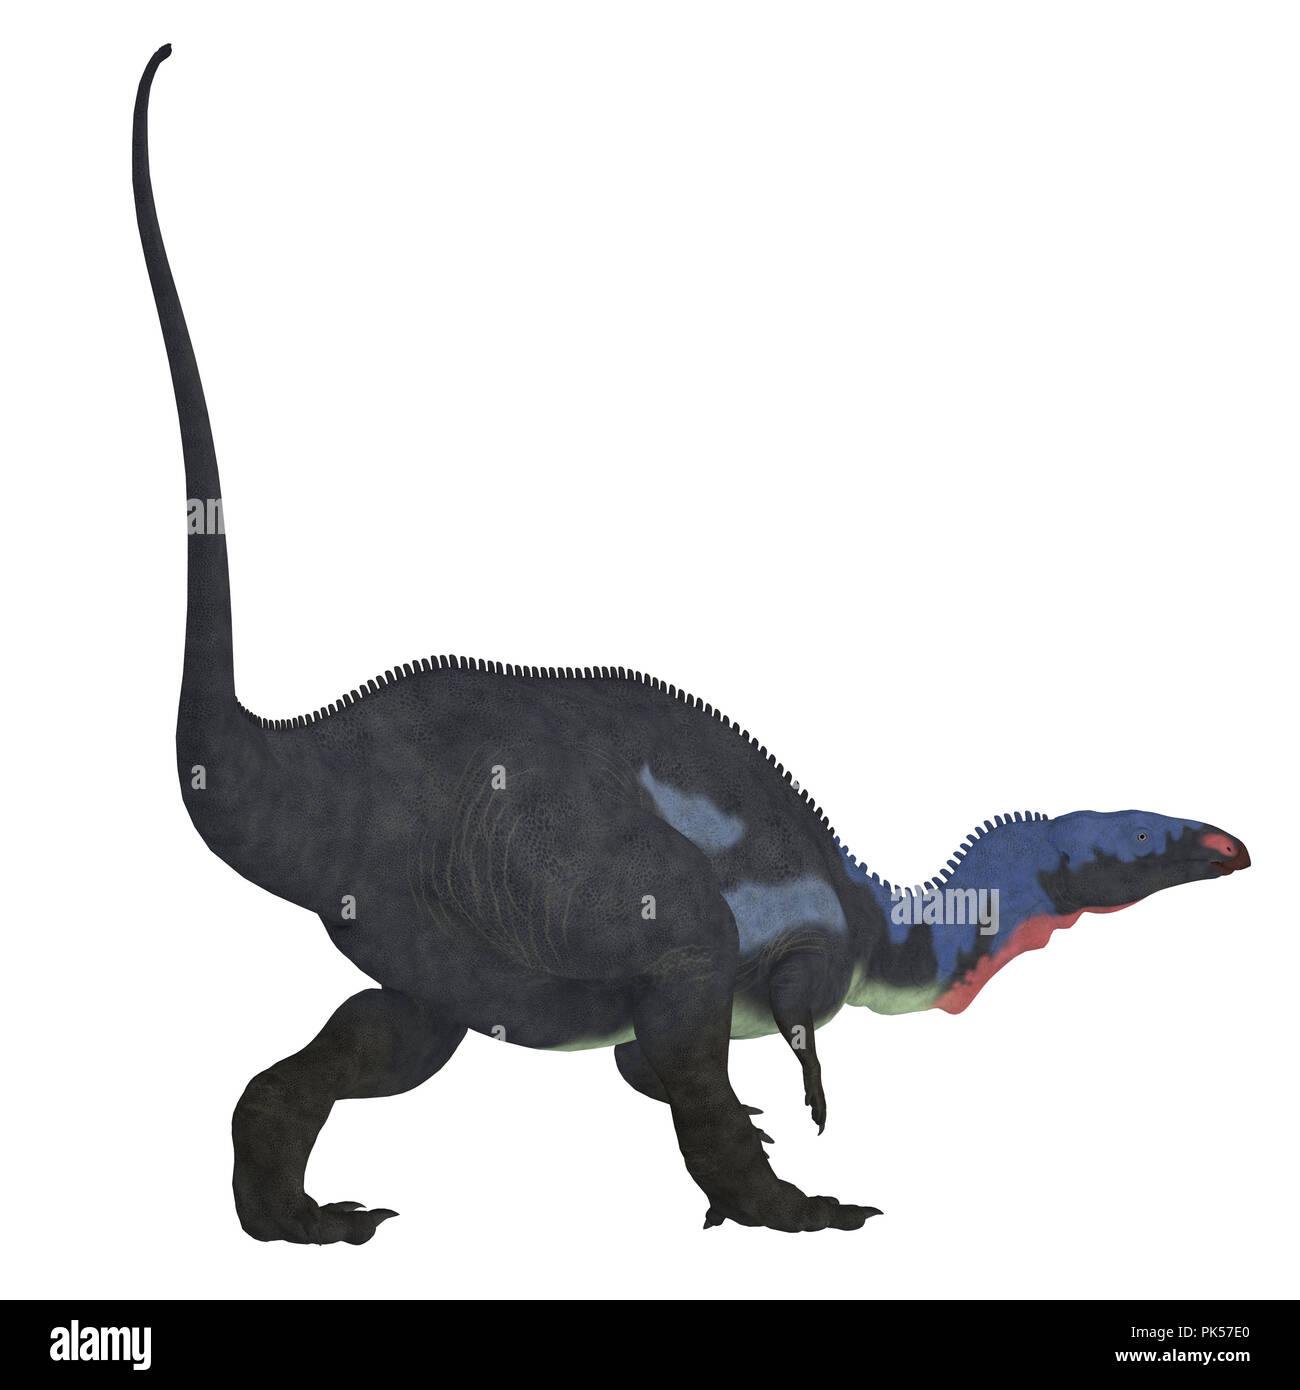 Camptosaurus Dinosaurier Schwanz - Camptosaurus war ein Pflanzenfresser Therapsiden, dass in Nordamerika während der Kreidezeit lebten. Stockfoto